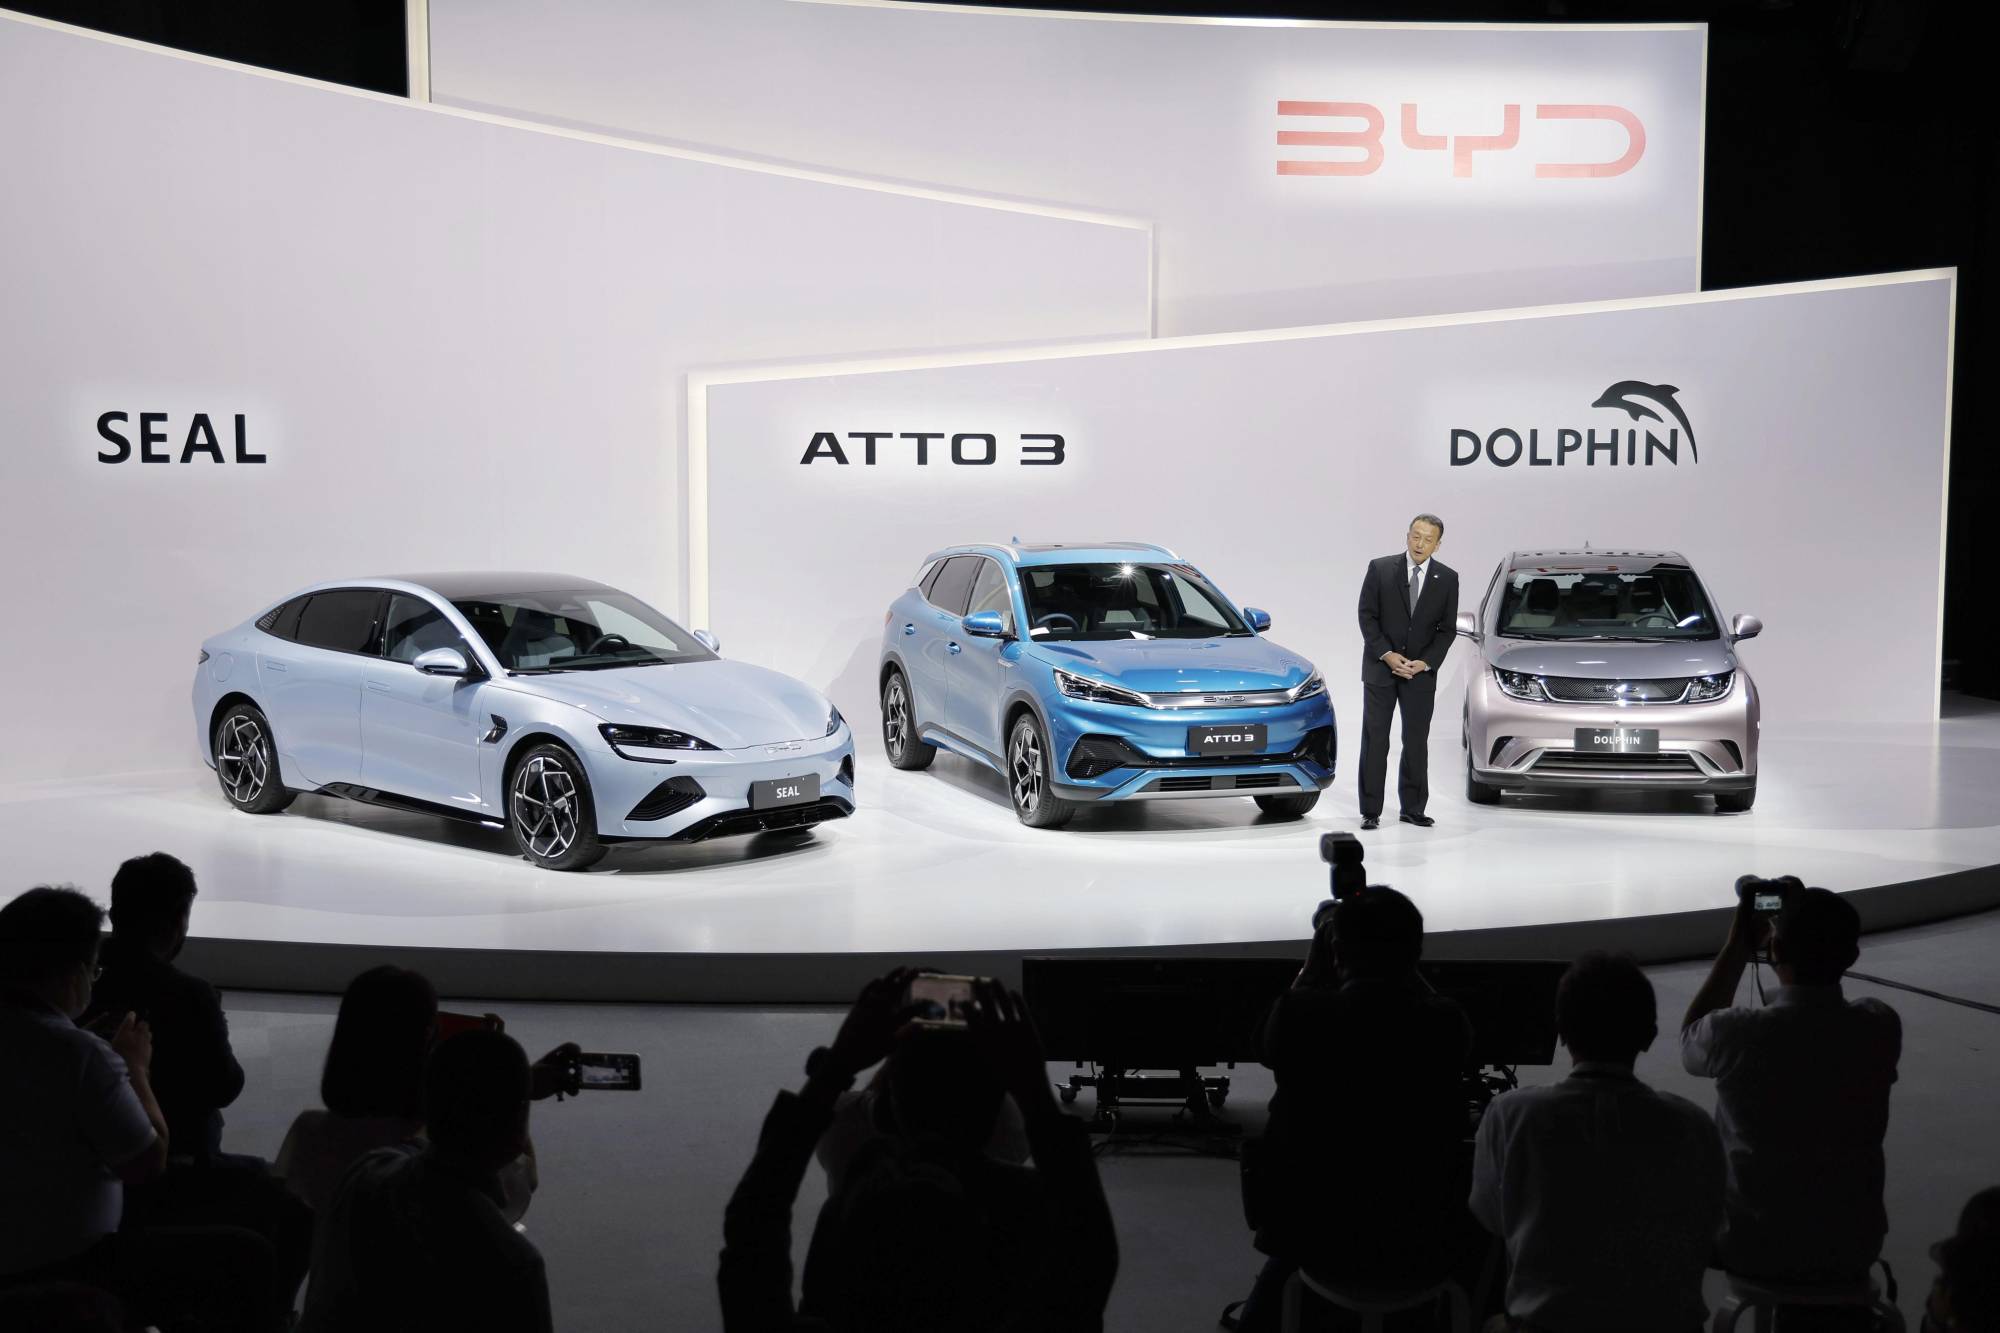 Çinli Elektrikli Araç Üreticisi BYD, Rekor Satış Rakamları Açıkladı!